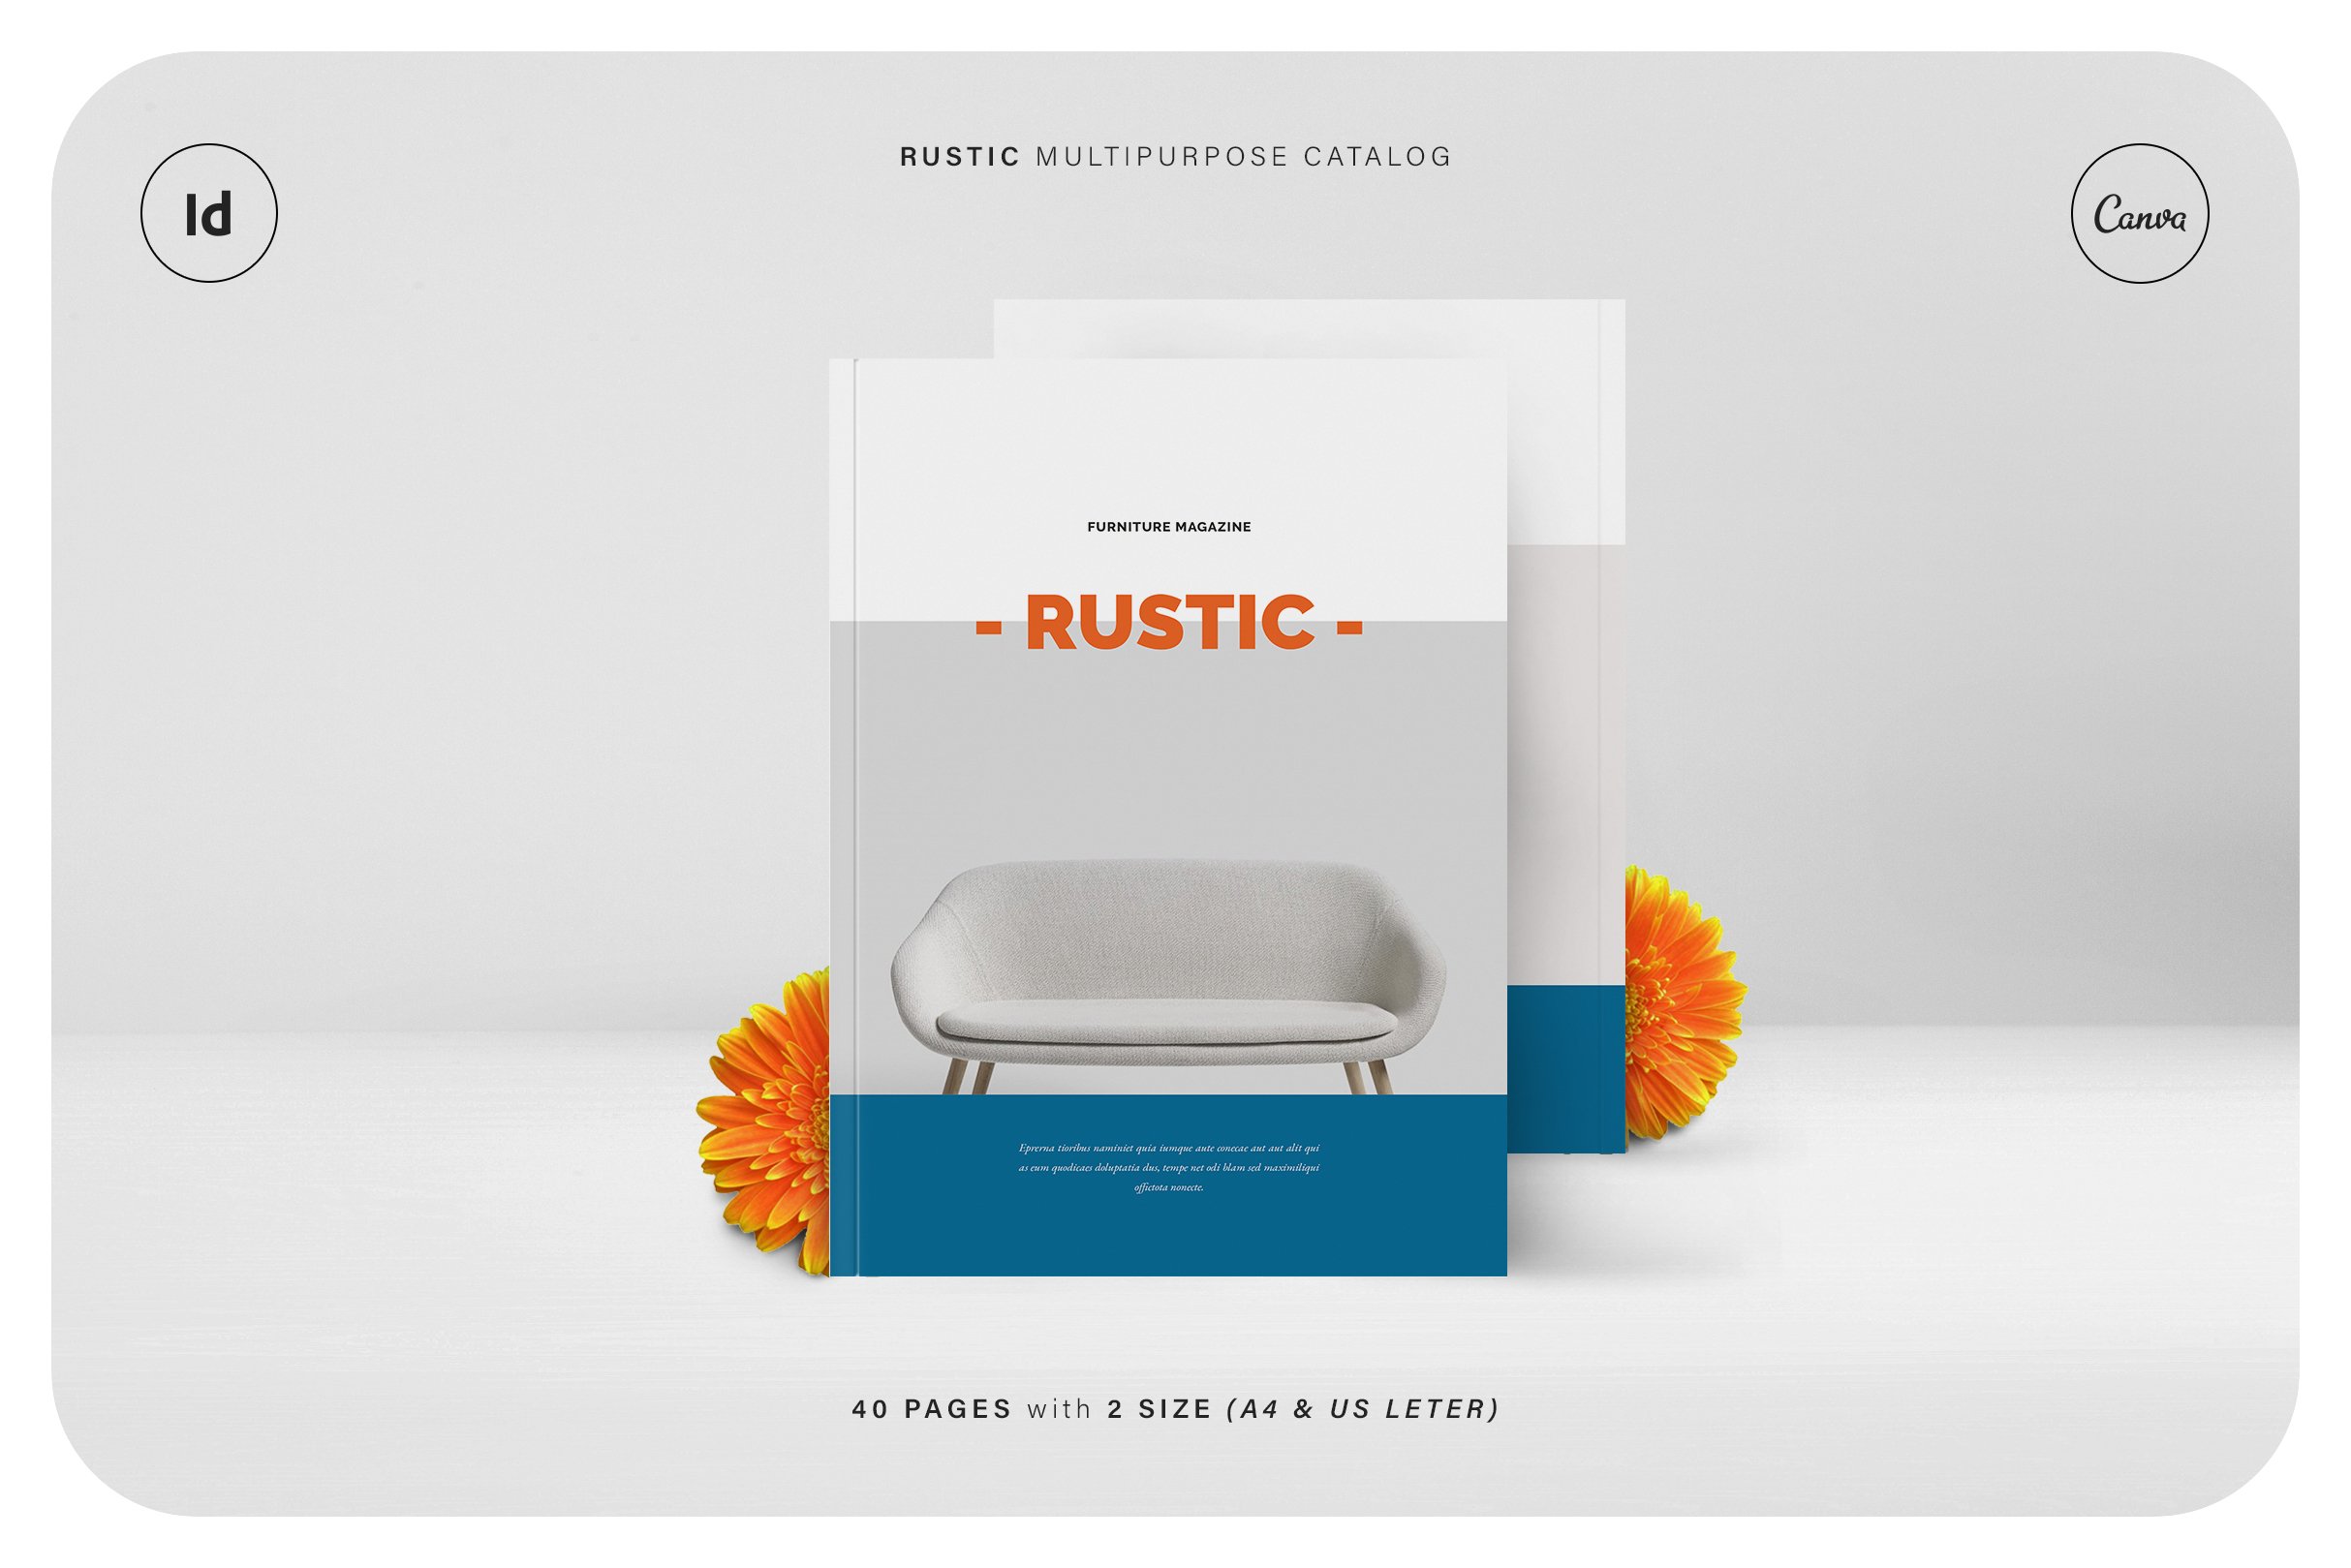 RUSTIC Multipurpose Catalog cover image.